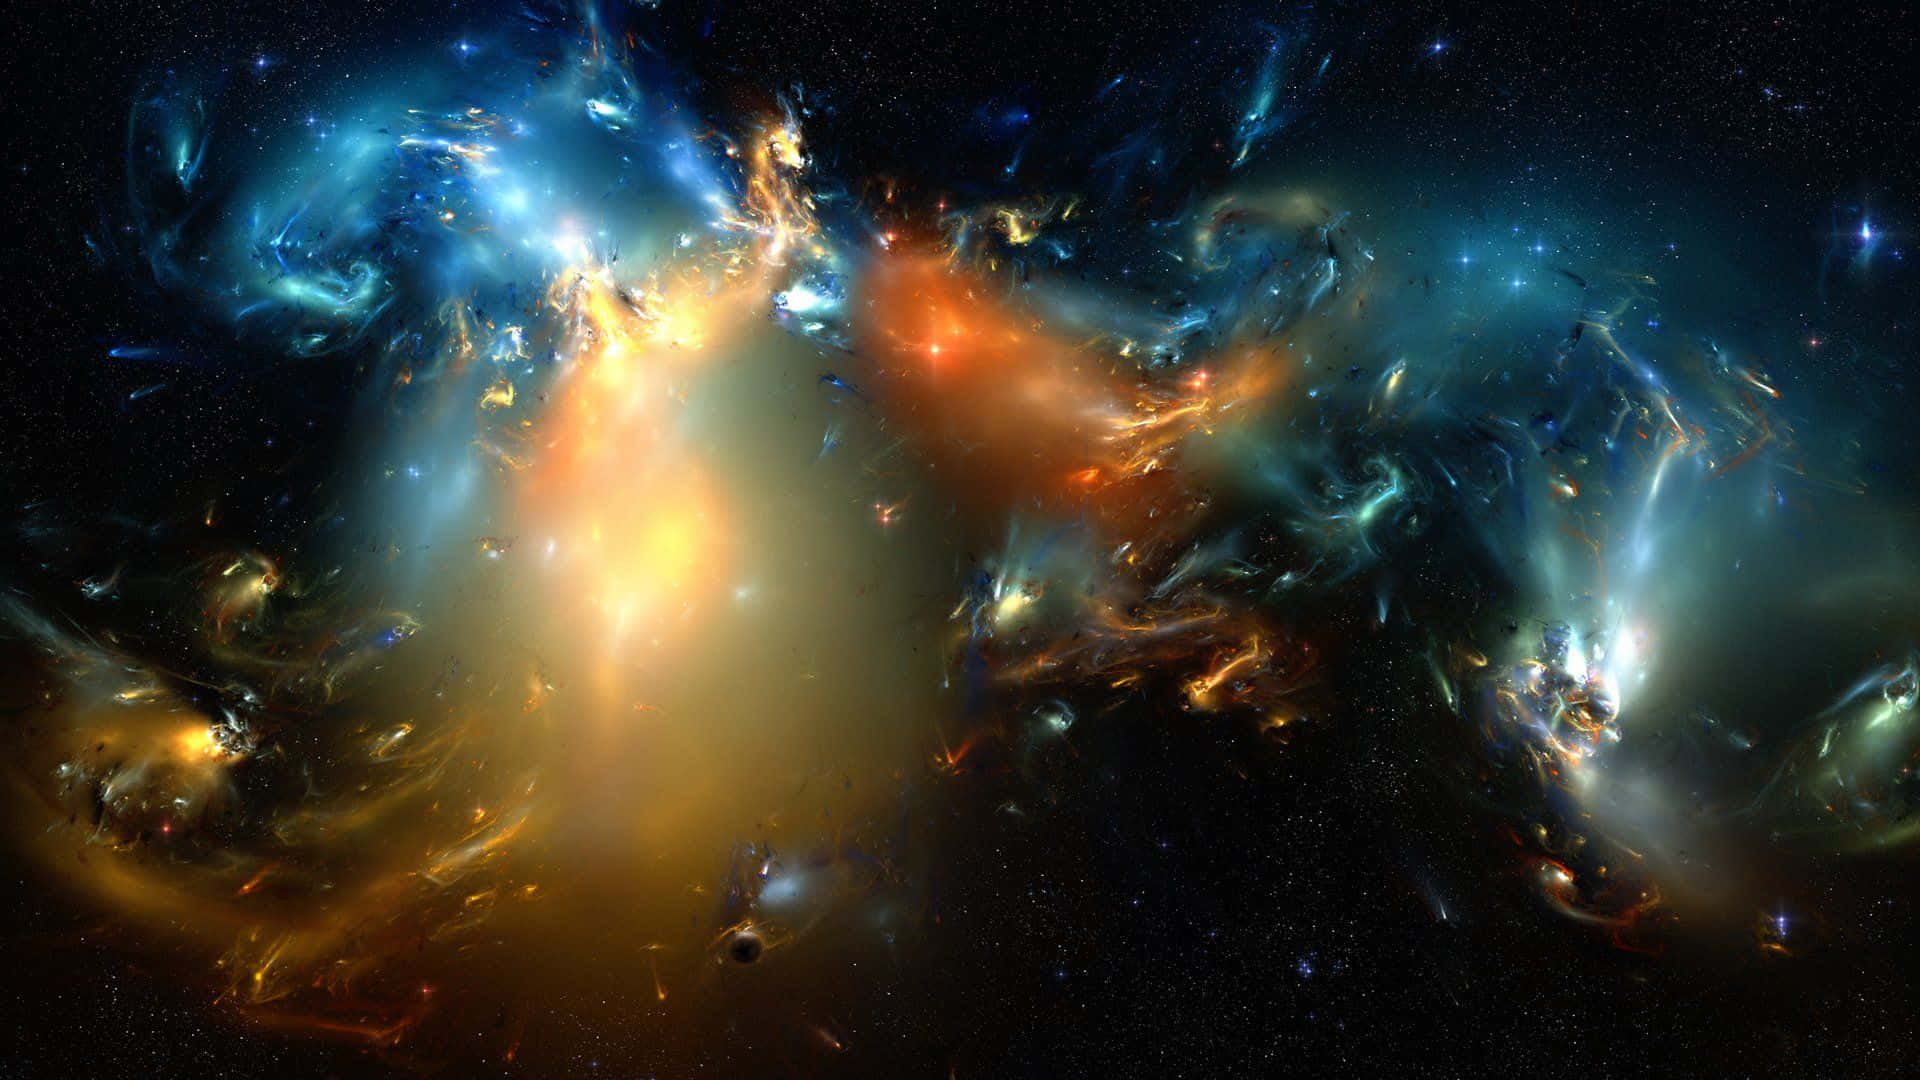 abstract nebula